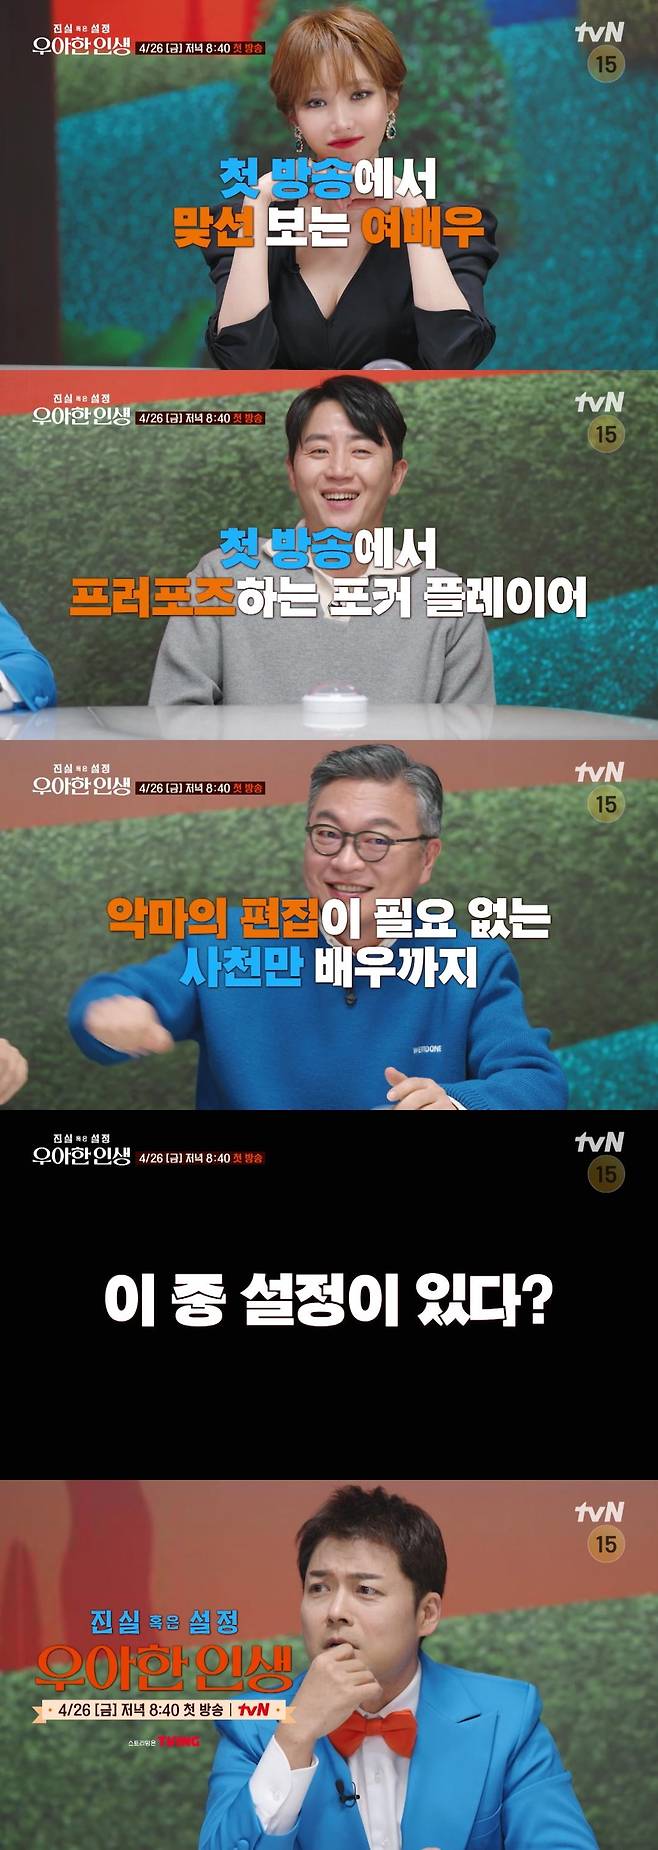 / 사진 제공: tvN <진실 혹은 설정: 우아한 인생> 1회 예고 영상 캡처